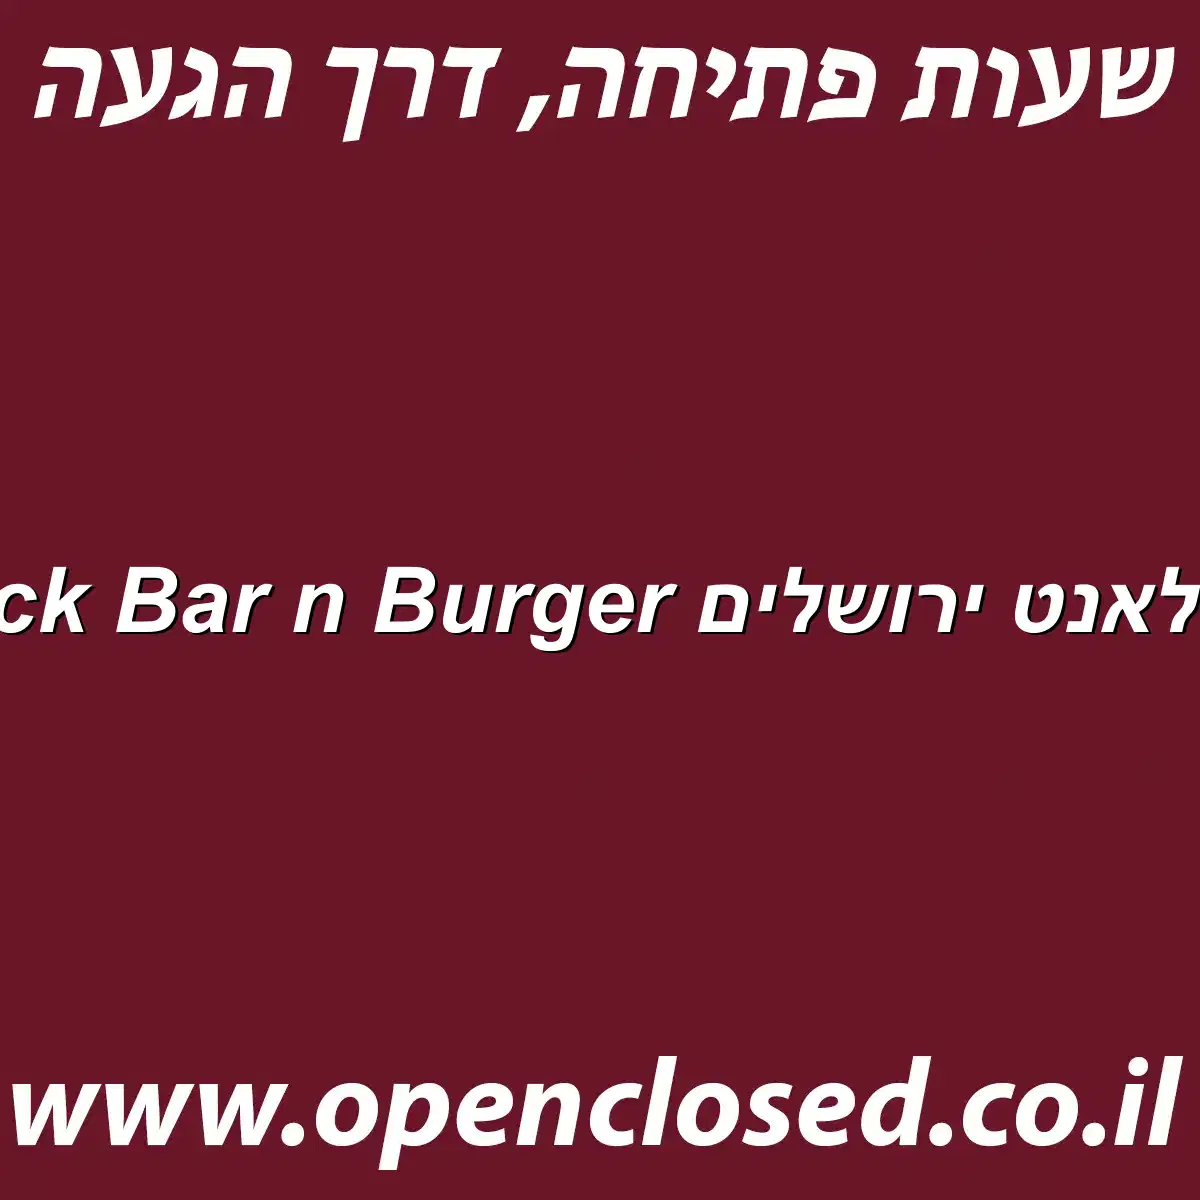 Black Bar n Burger יס פלאנט ירושלים